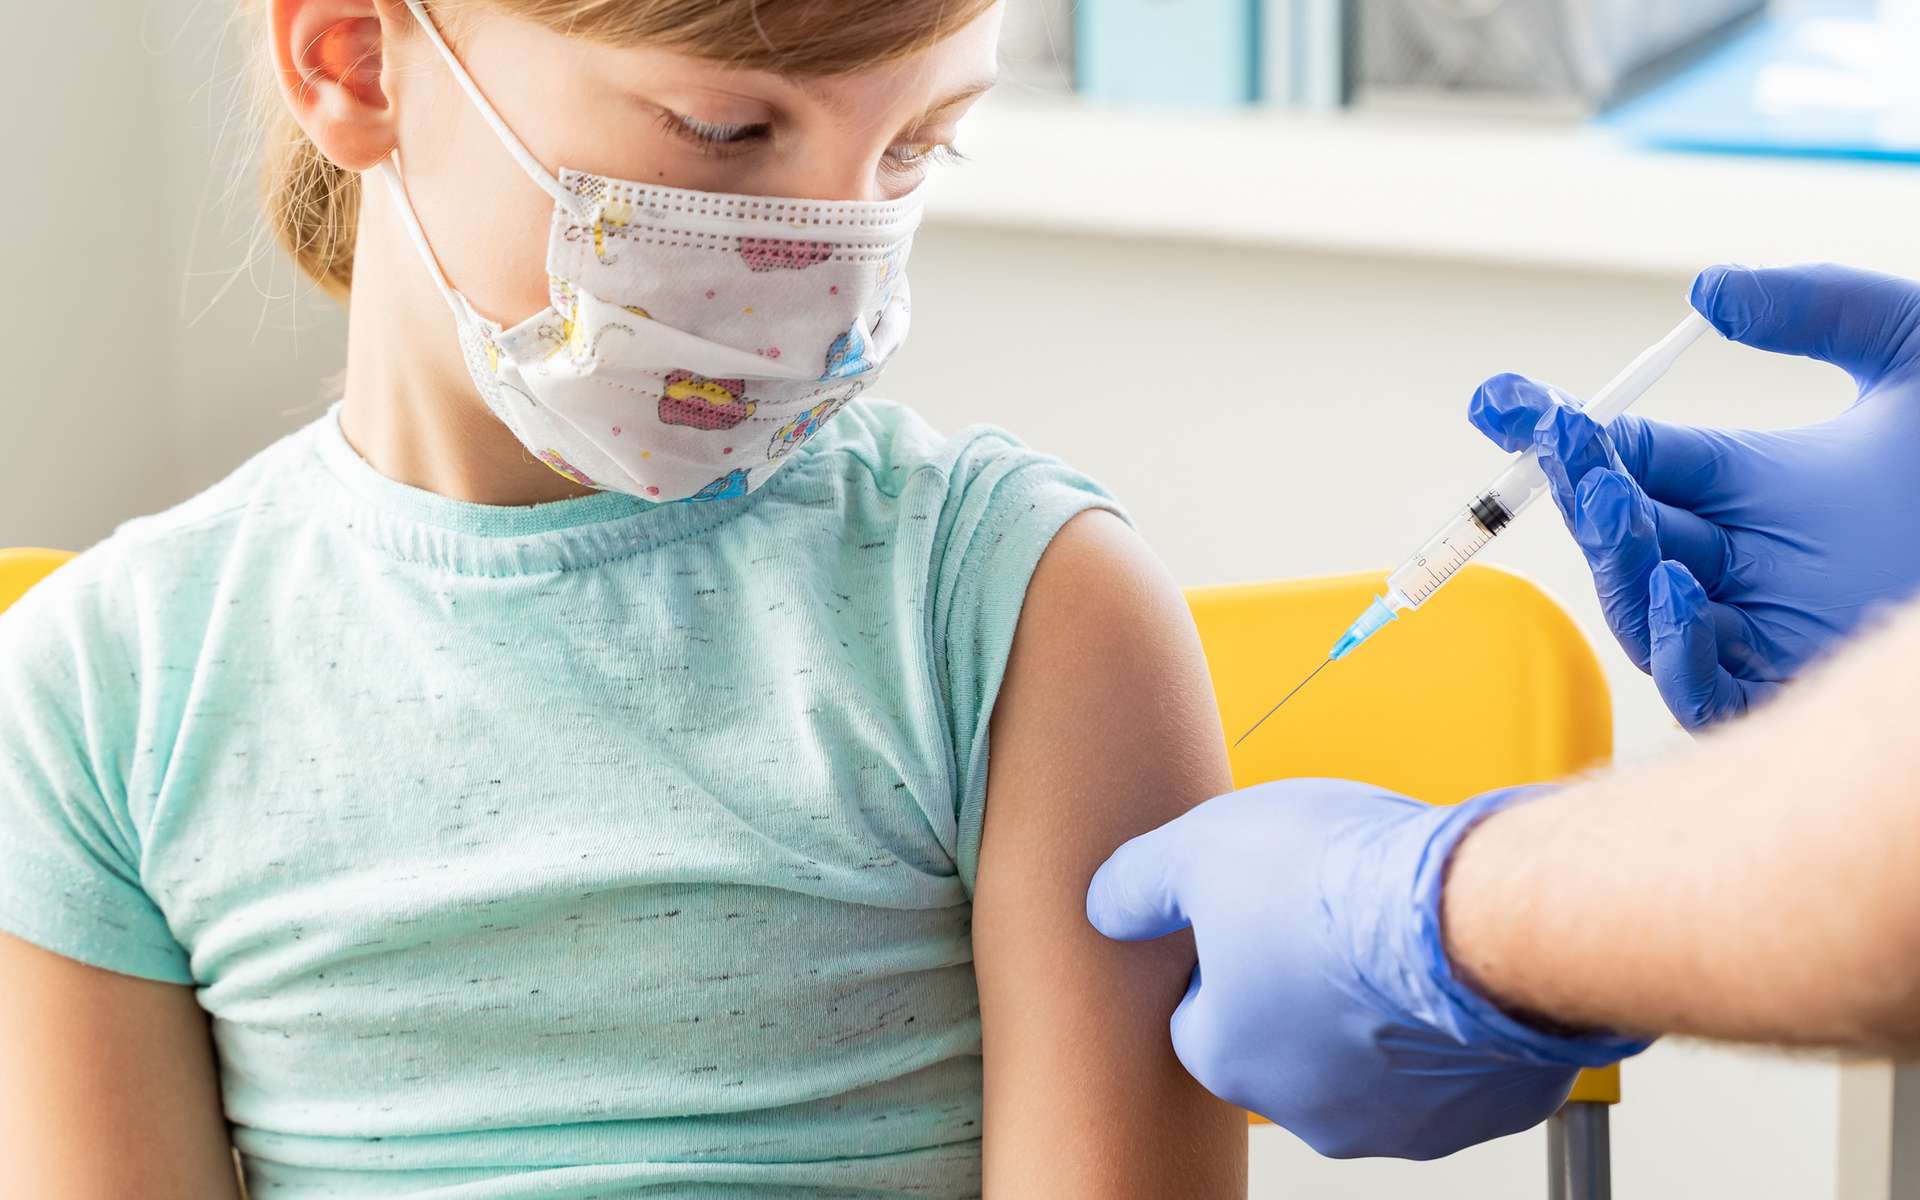 La France a lancé mercredi la campagne de vaccination contre la Covid-19 pour les enfants de 5 à 11 ans. © Ira Lichi, Shutterstock